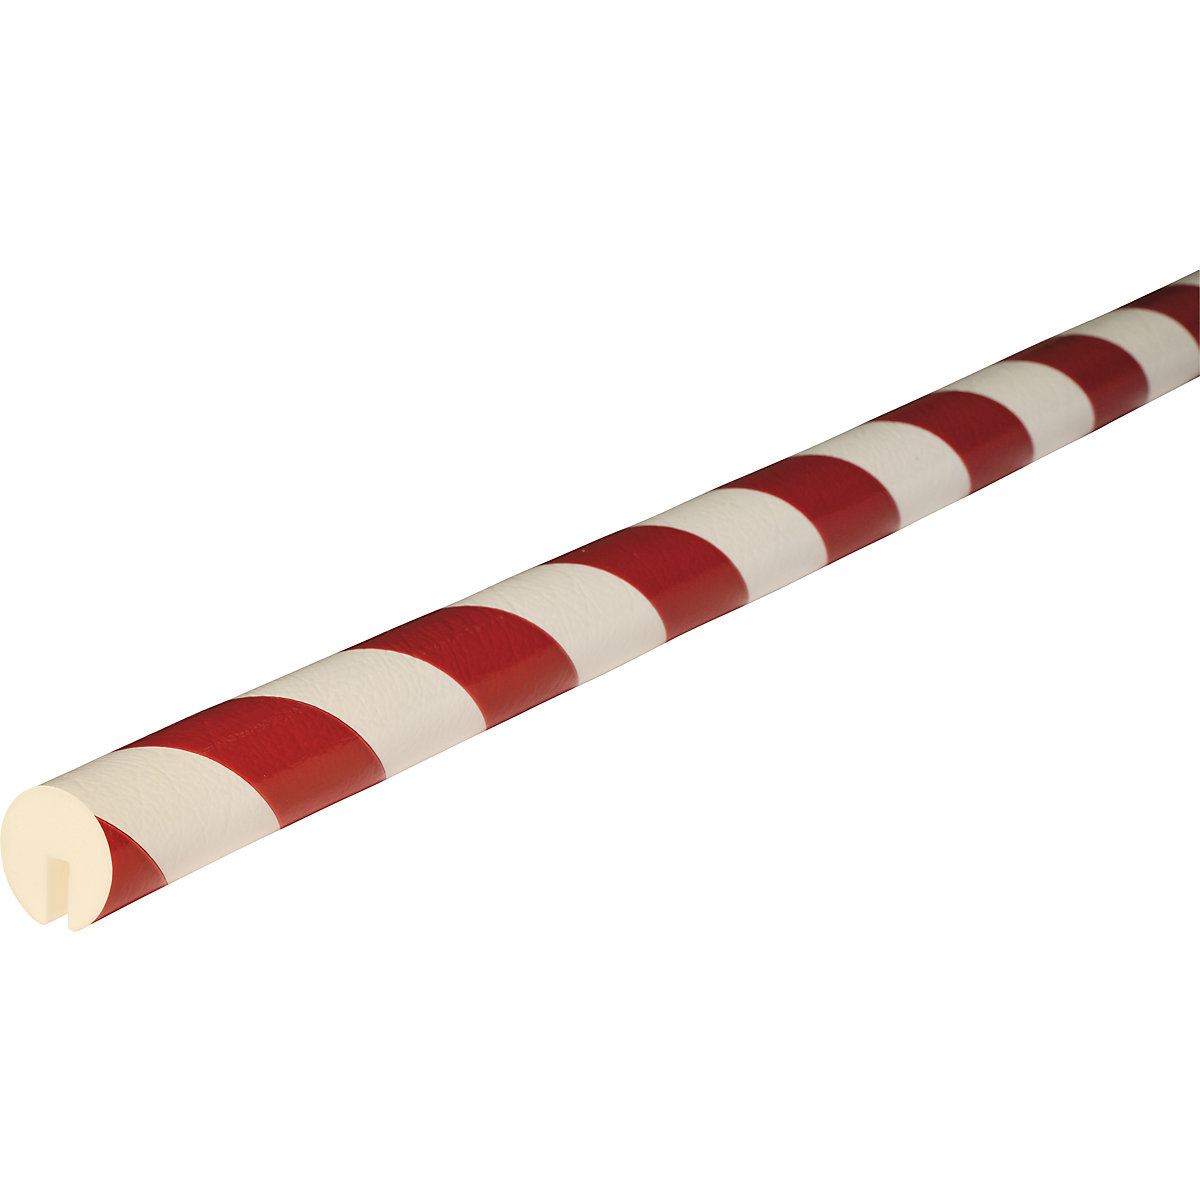 Proteção de rebordos Knuffi® – SHG, tipo B, 1 rolo de 5 m, vermelho/branco-22